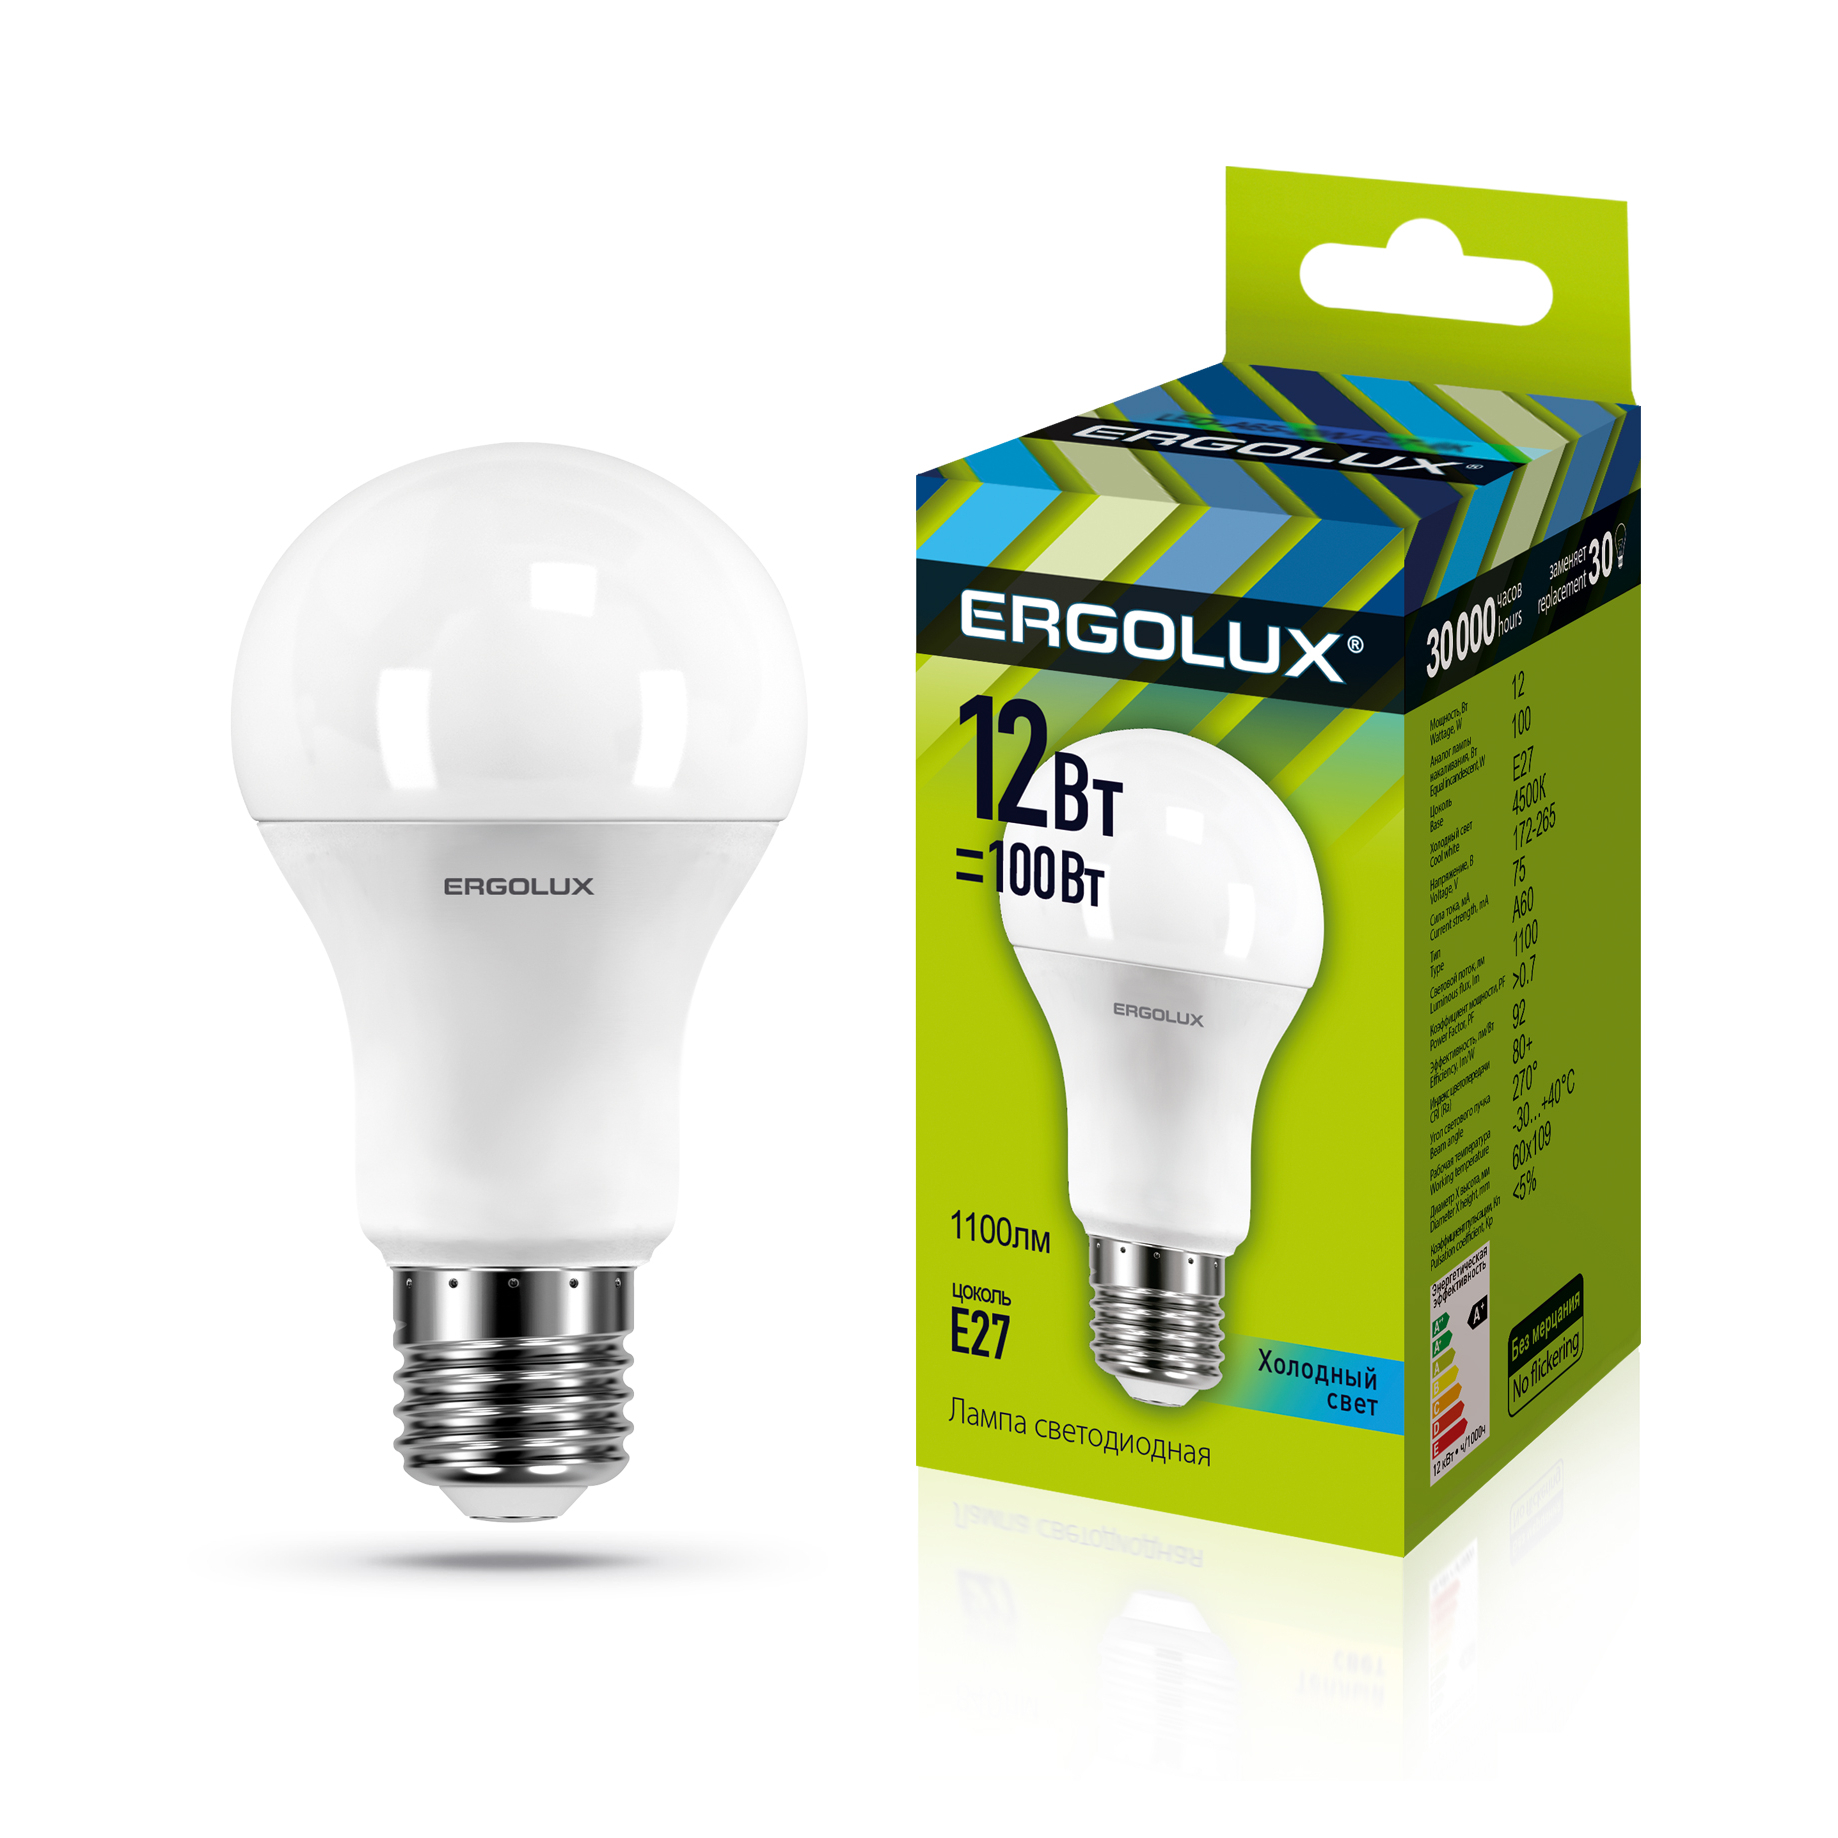 Ergolux LED-A60-12W-E27-4K (Эл.лампа светодиодная ЛОН 12Вт E27 4500K 180-240В)